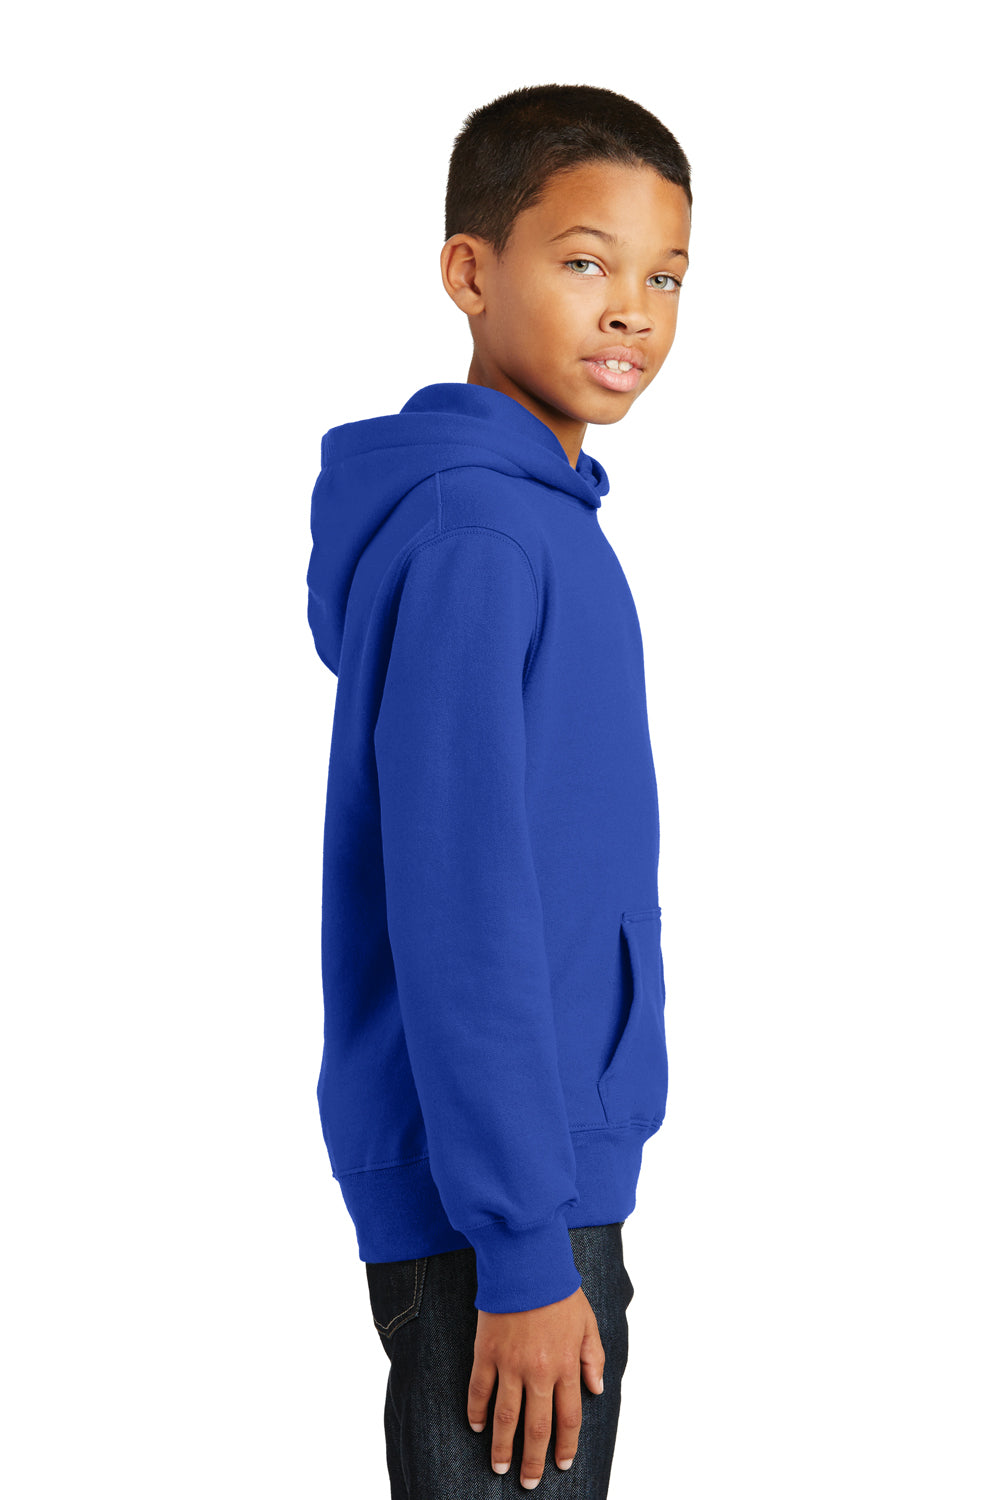 Port & Company PC850YH Youth Fan Favorite Fleece Hooded Sweatshirt Hoodie Royal Blue Side